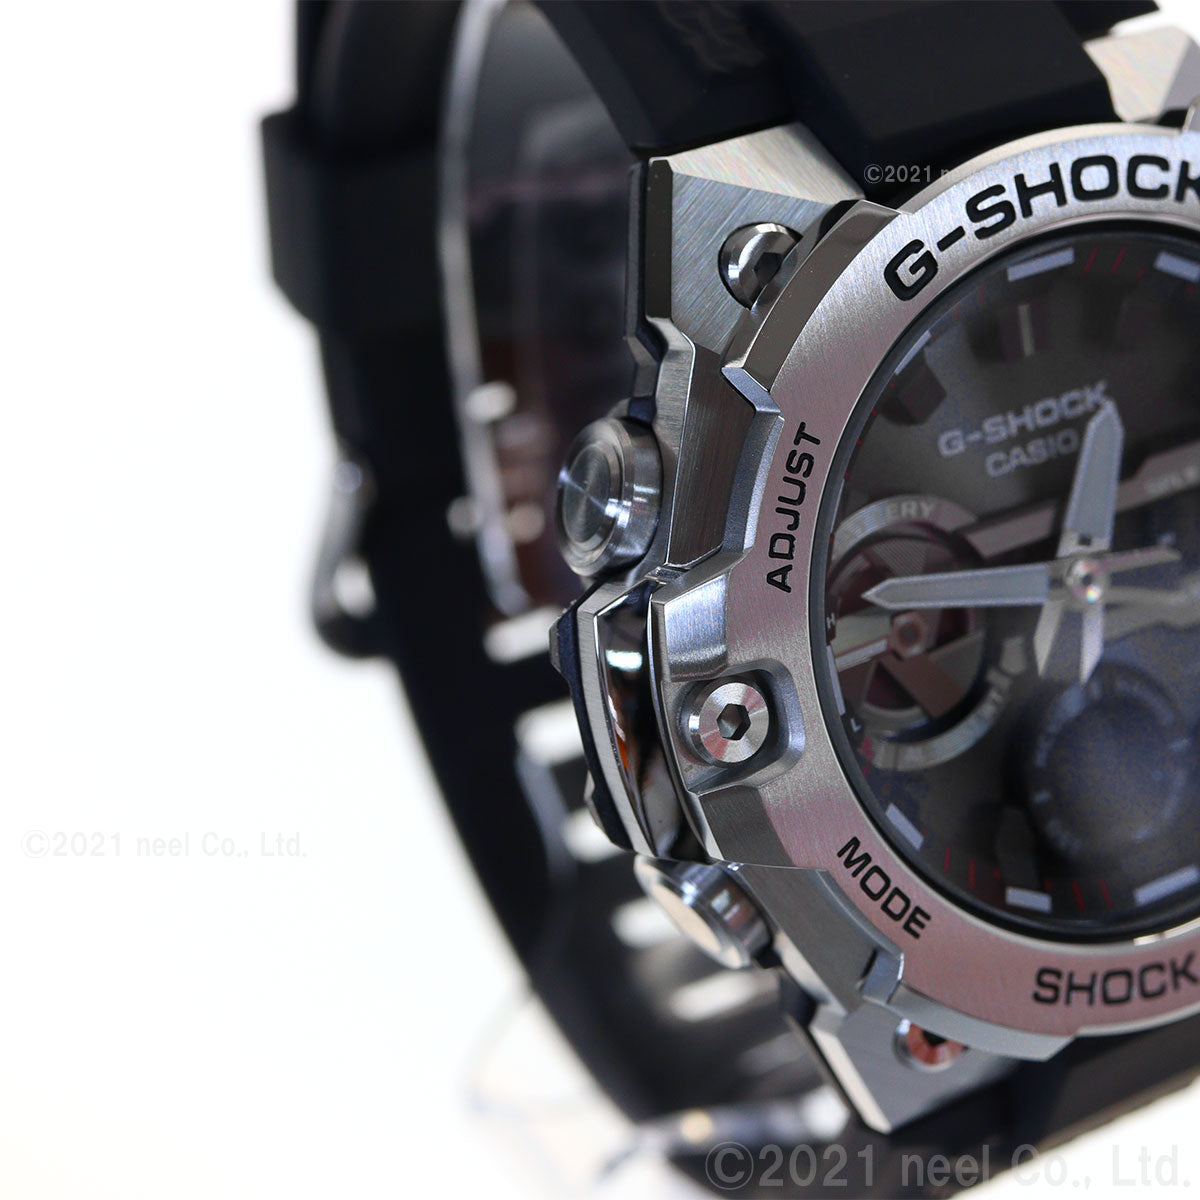 G-SHOCK ソーラー G-STEEL カシオ Gショック Gスチール CASIO 腕時計 メンズ タフソーラー GST-B400-1AJF